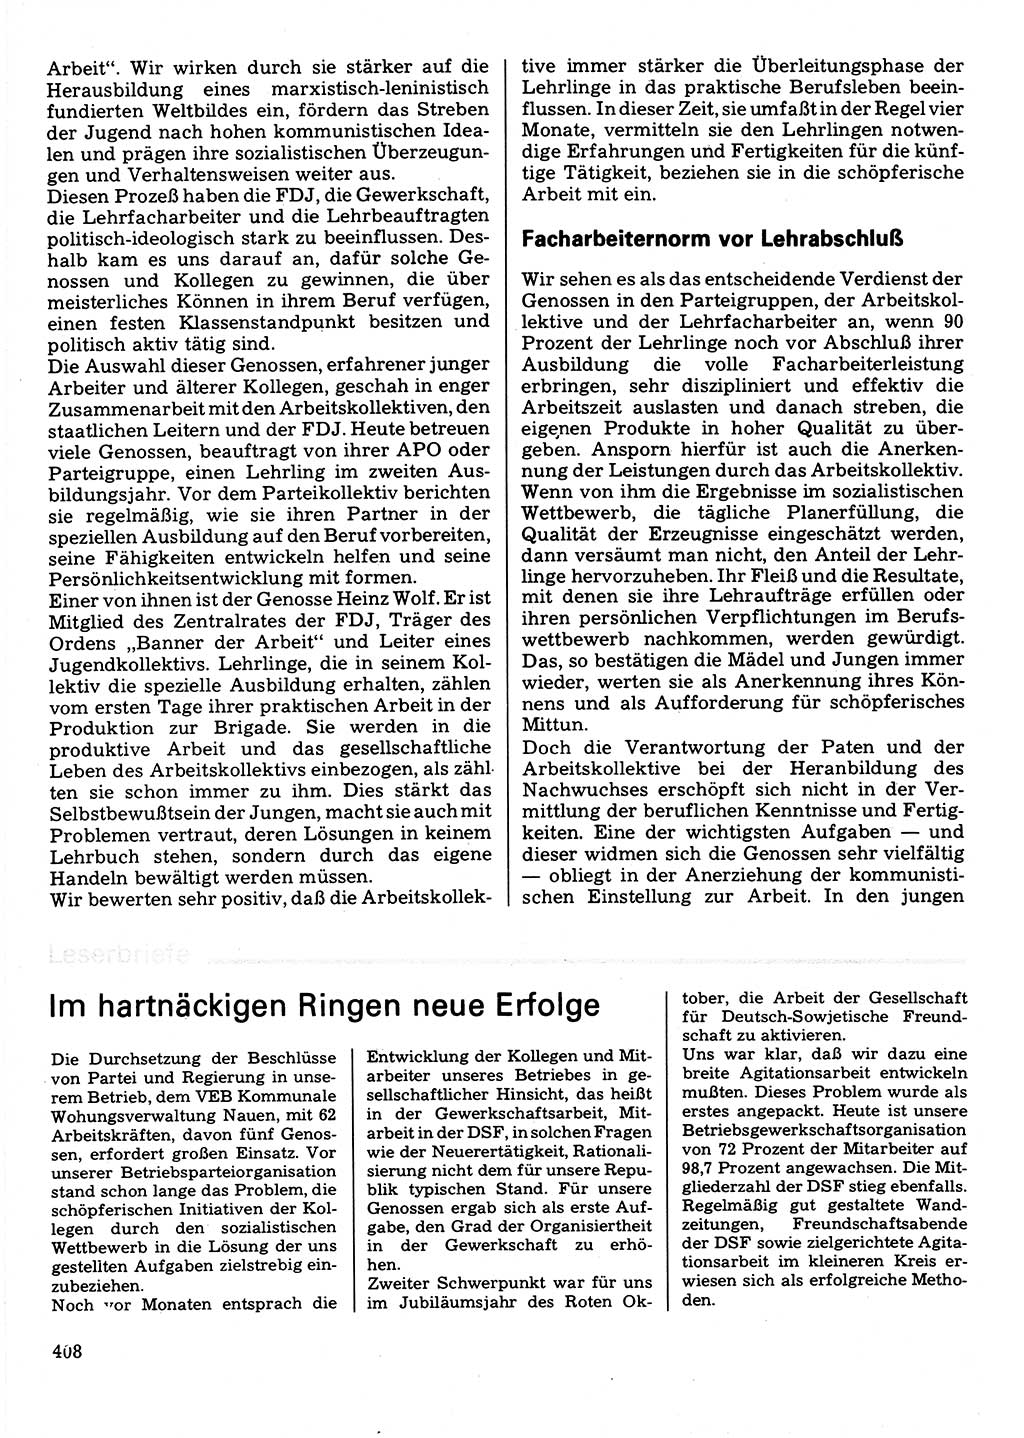 Neuer Weg (NW), Organ des Zentralkomitees (ZK) der SED (Sozialistische Einheitspartei Deutschlands) für Fragen des Parteilebens, 32. Jahrgang [Deutsche Demokratische Republik (DDR)] 1977, Seite 408 (NW ZK SED DDR 1977, S. 408)